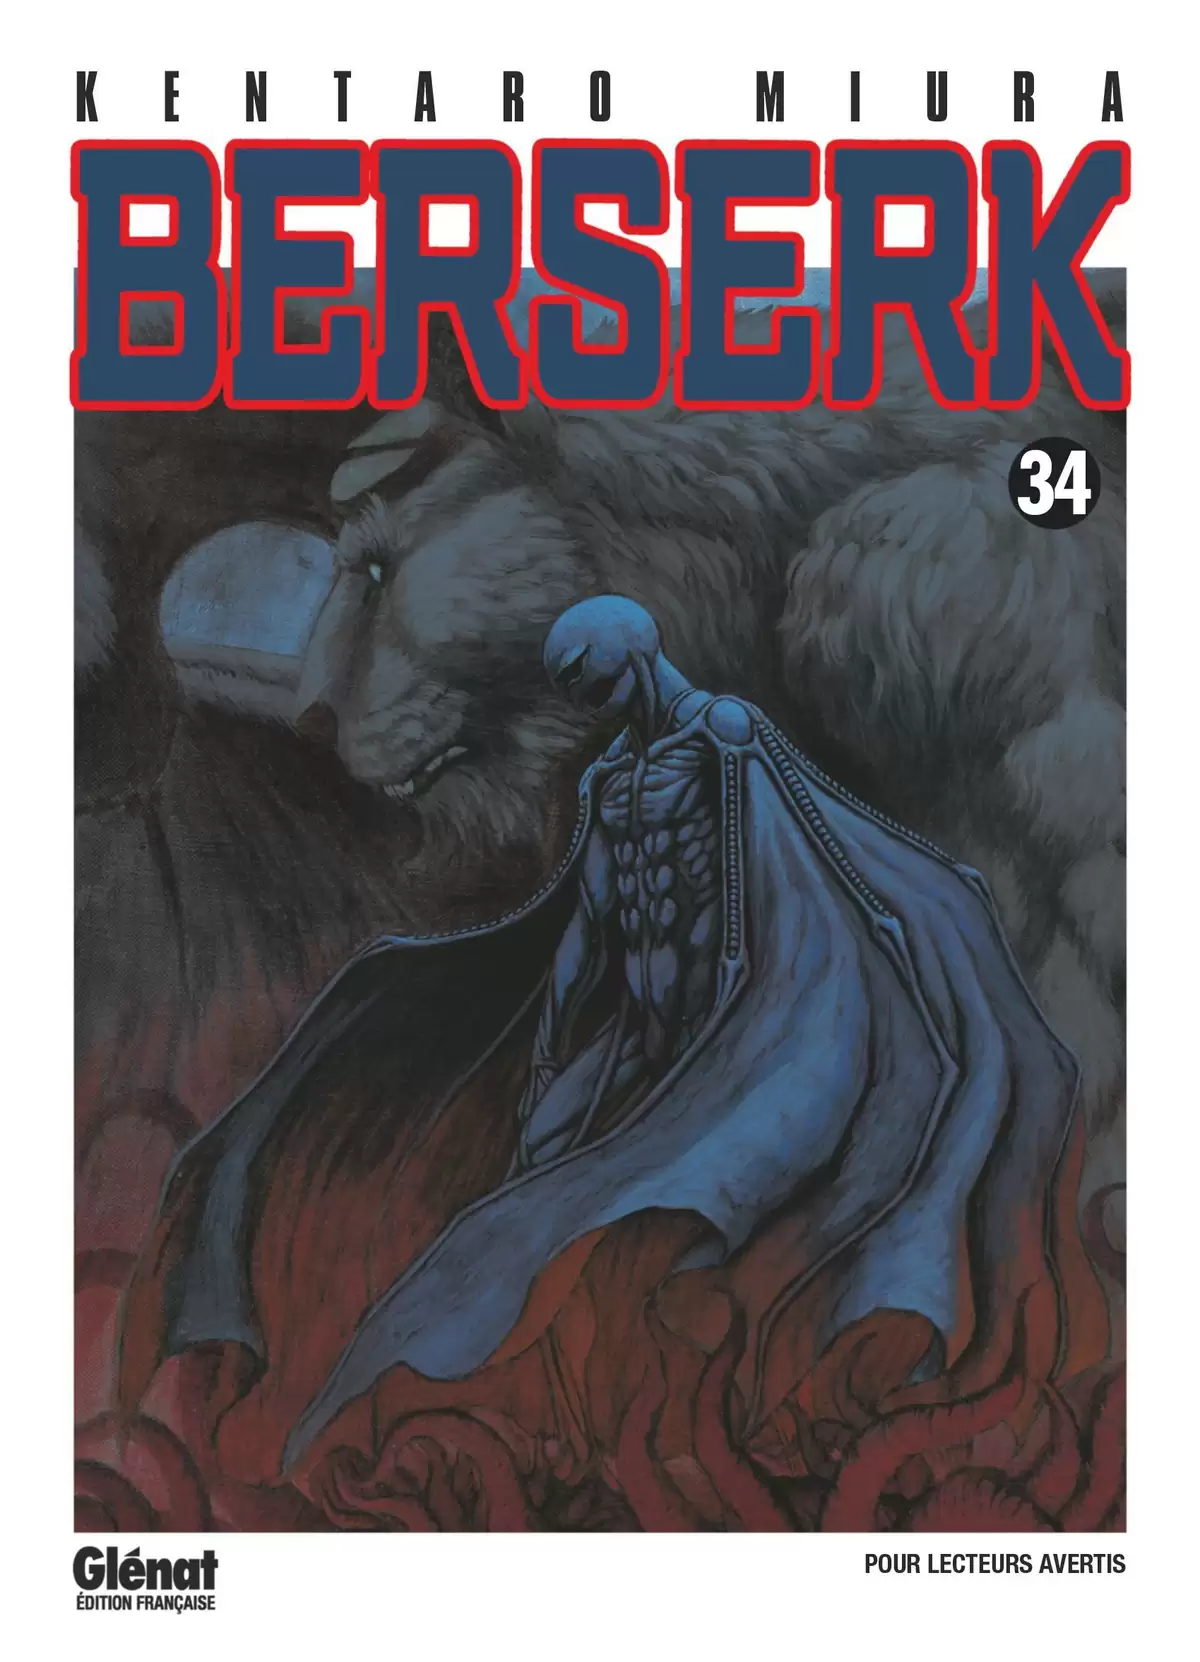 Berserk Volume 34 page 1